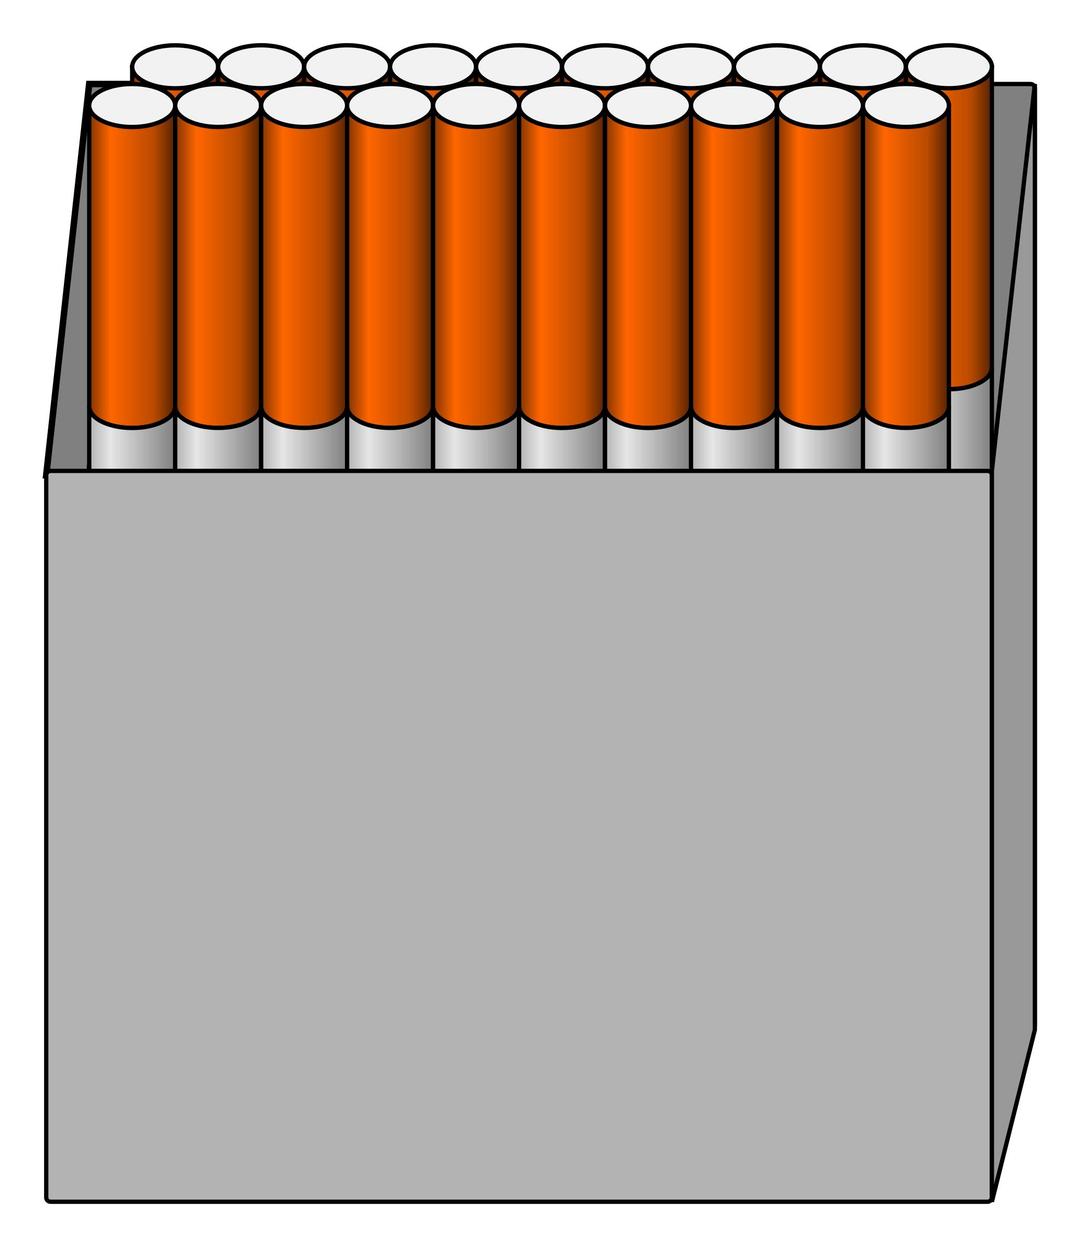 Box of 20 cigarettes png transparent